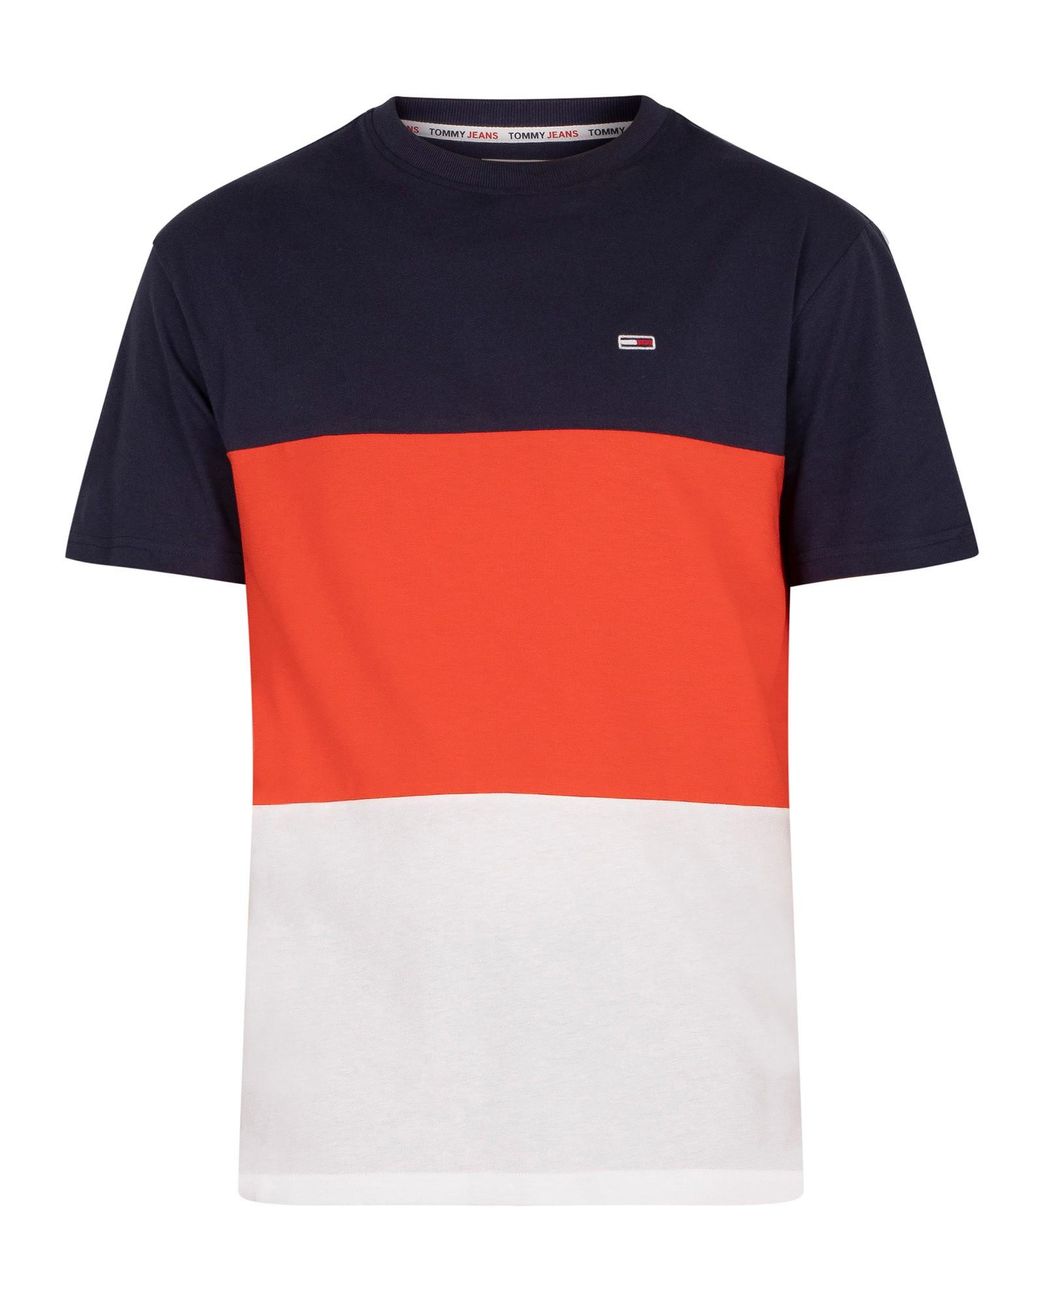 Hilfiger Classic Colour T-shirt for Men Lyst